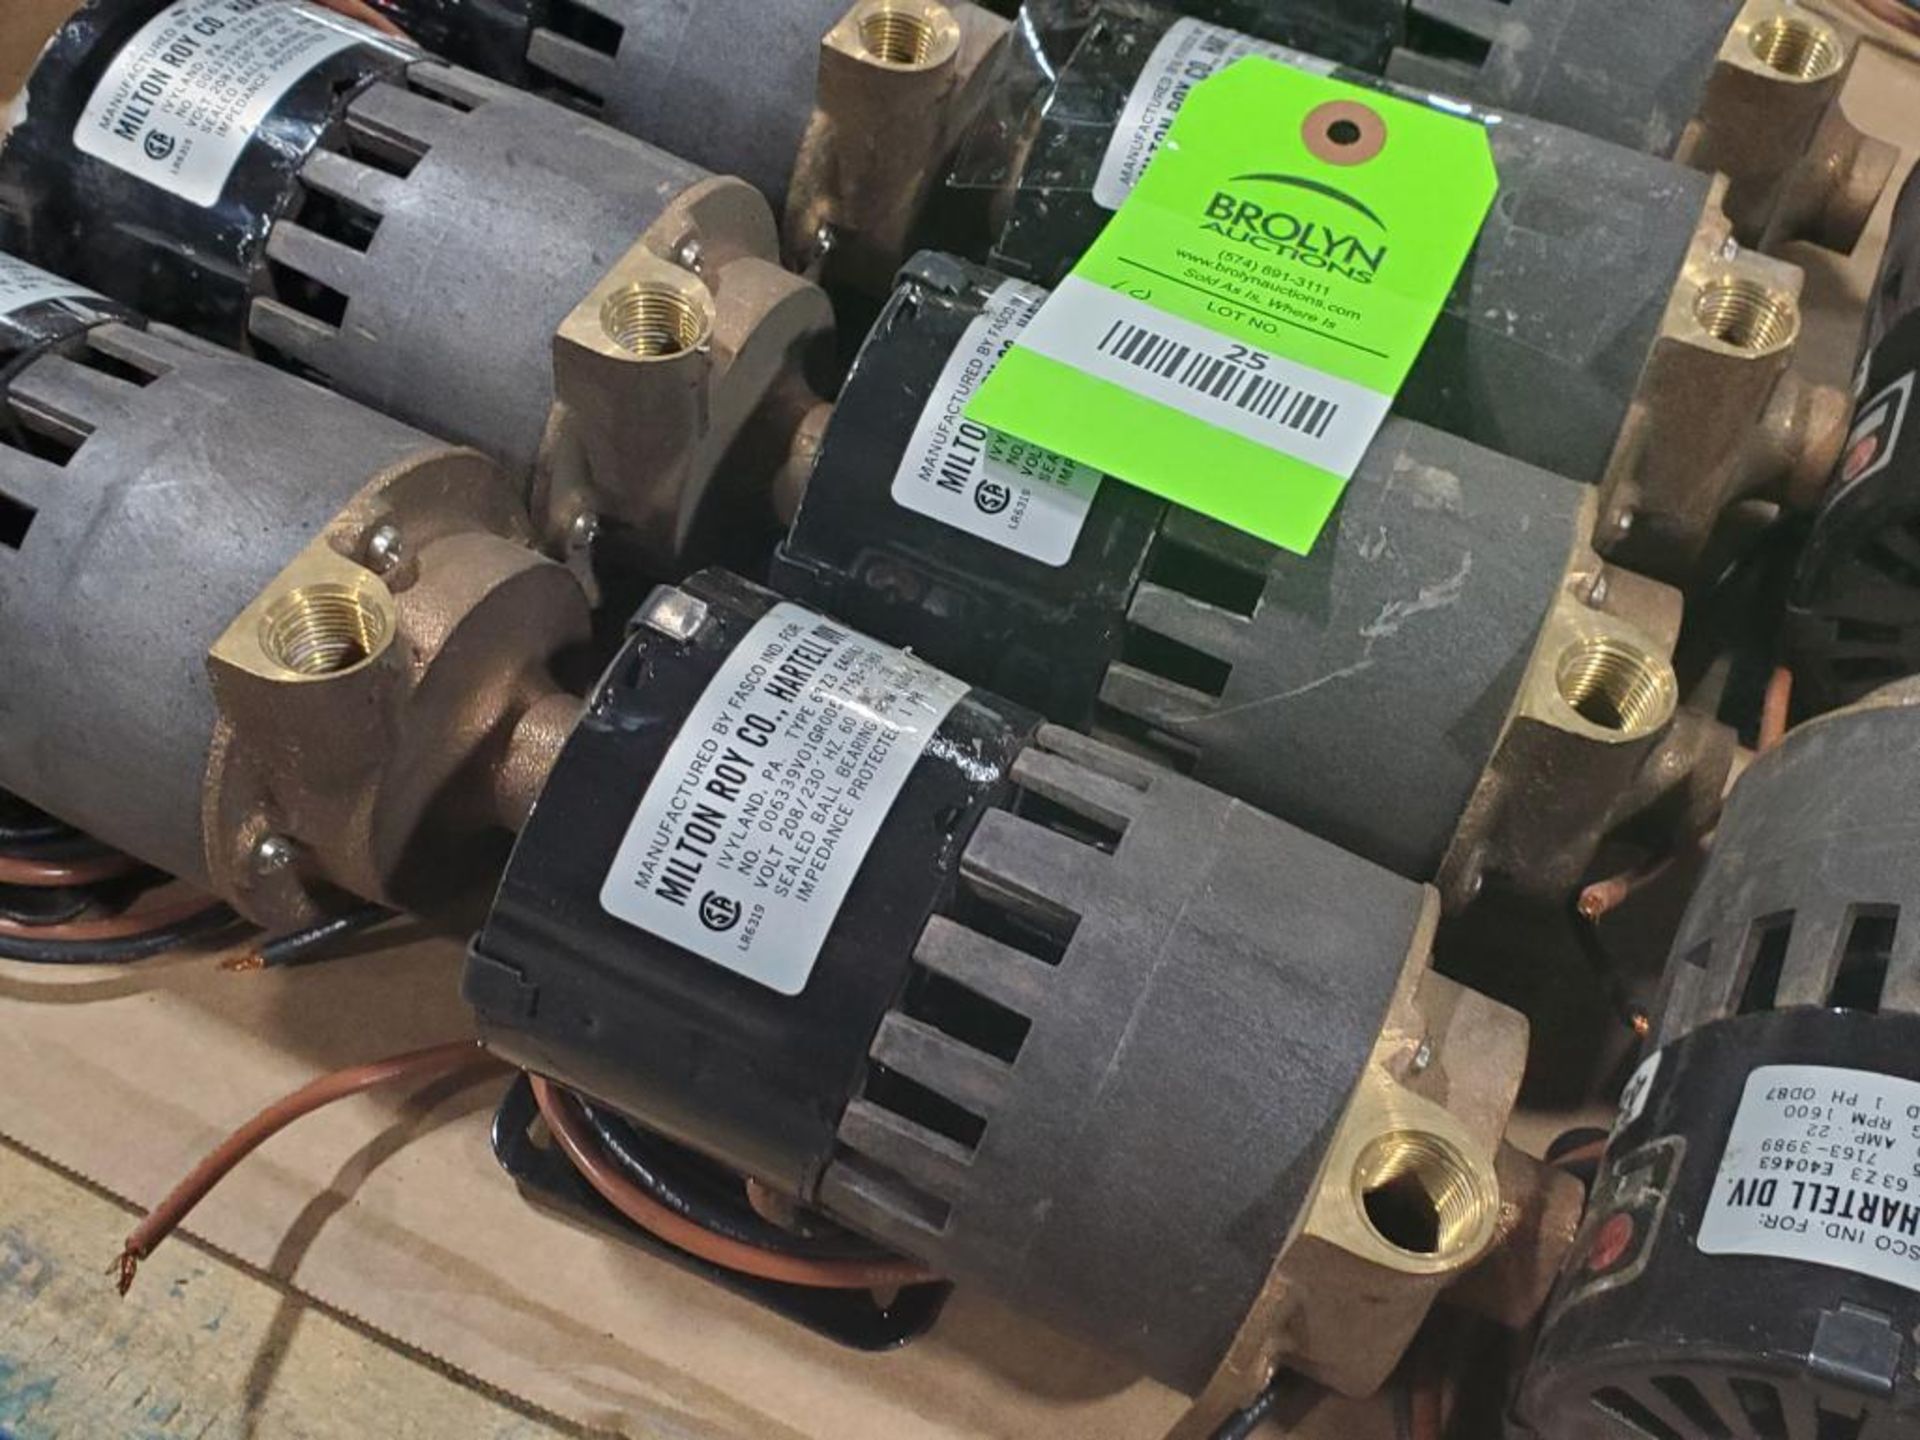 Qty 10 - Milton Roy Fasco pumps. Type 63-Z3- E40463. - Image 3 of 4